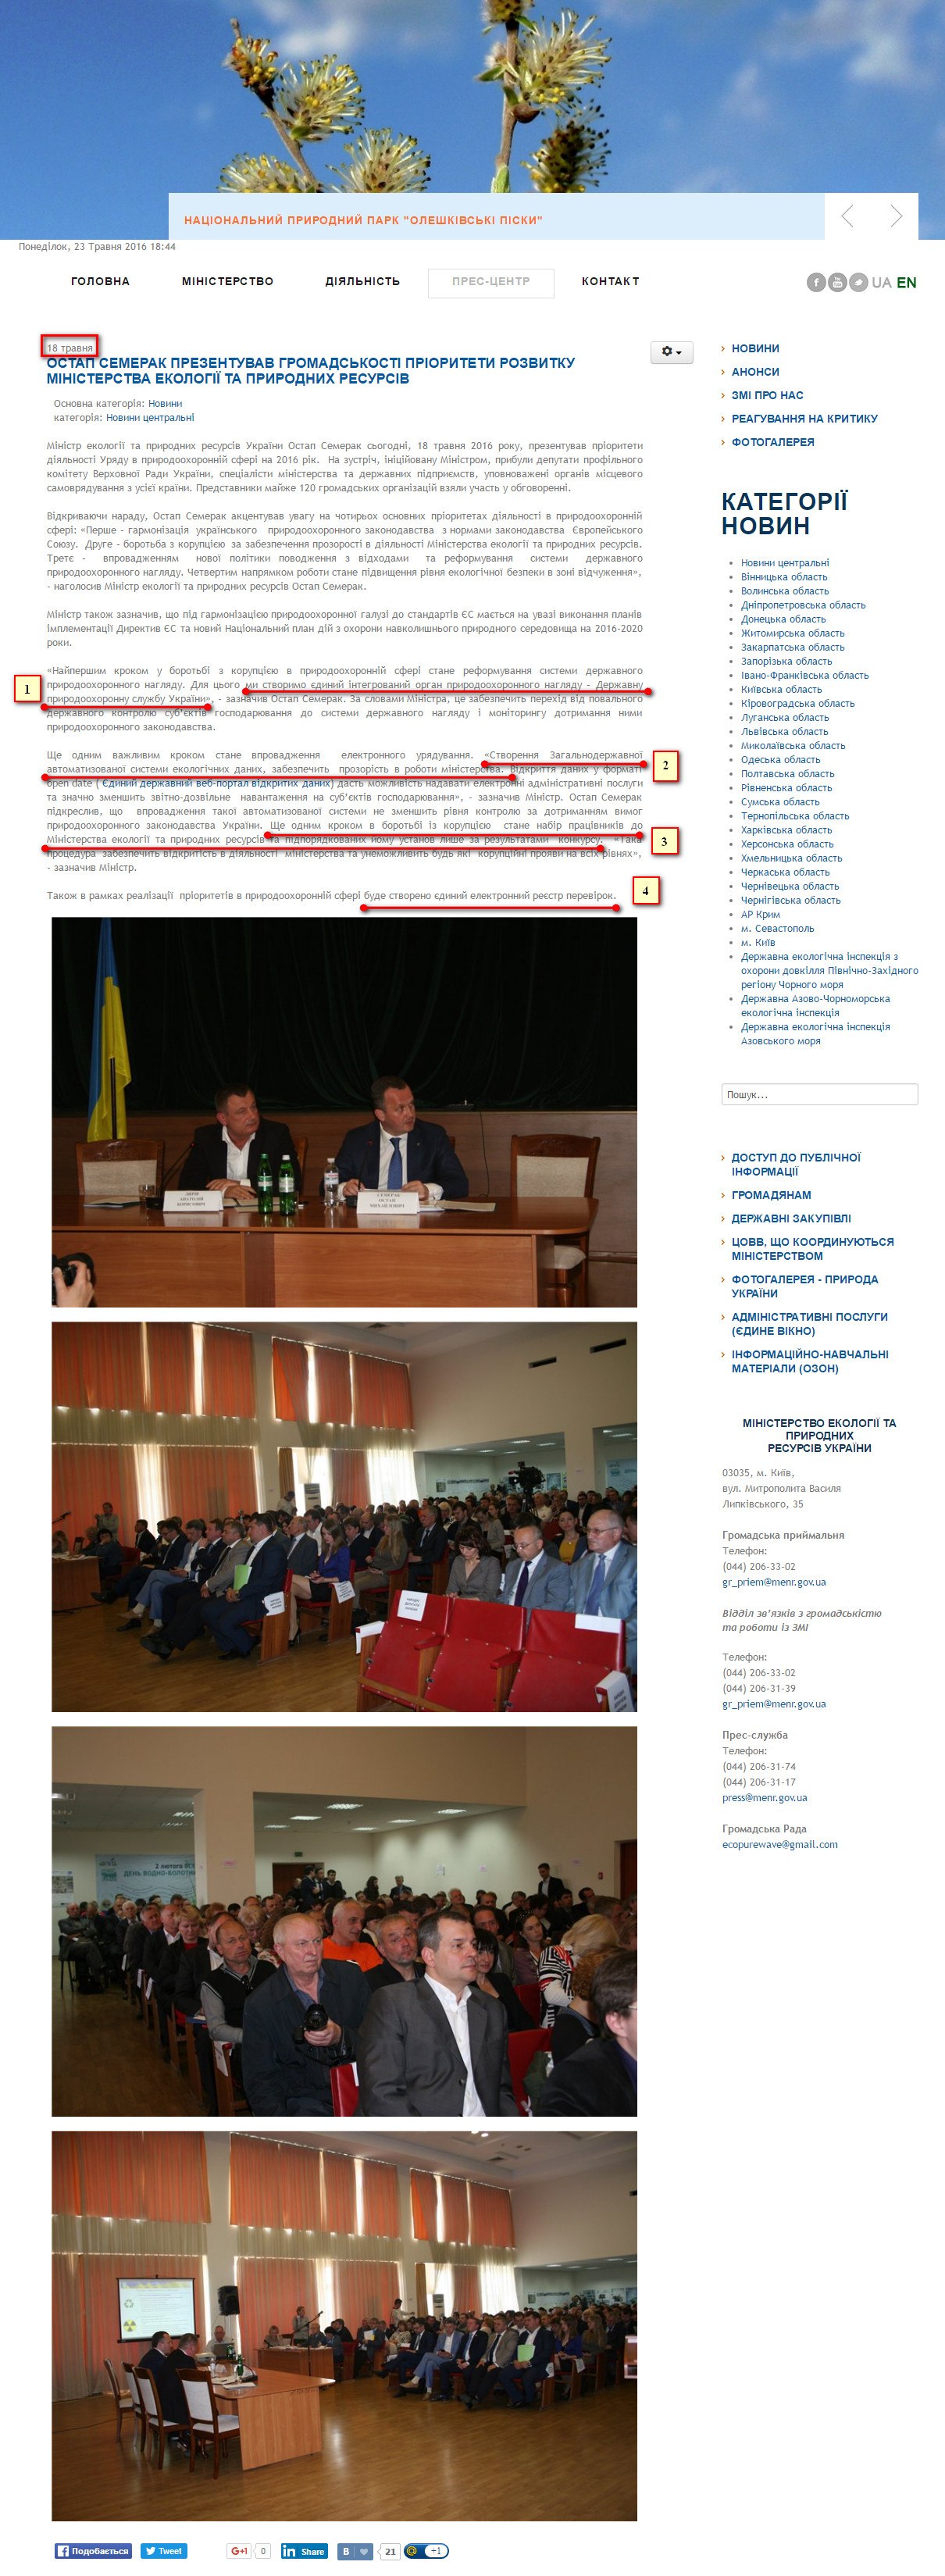 http://www.menr.gov.ua/press-center/news/123-news1/4916-ostap-semerak-prezentuvav-priorytety-rozvytku-ministerstva-ekolohii-ta-pryrodnykh-resursiv-hromadskosti